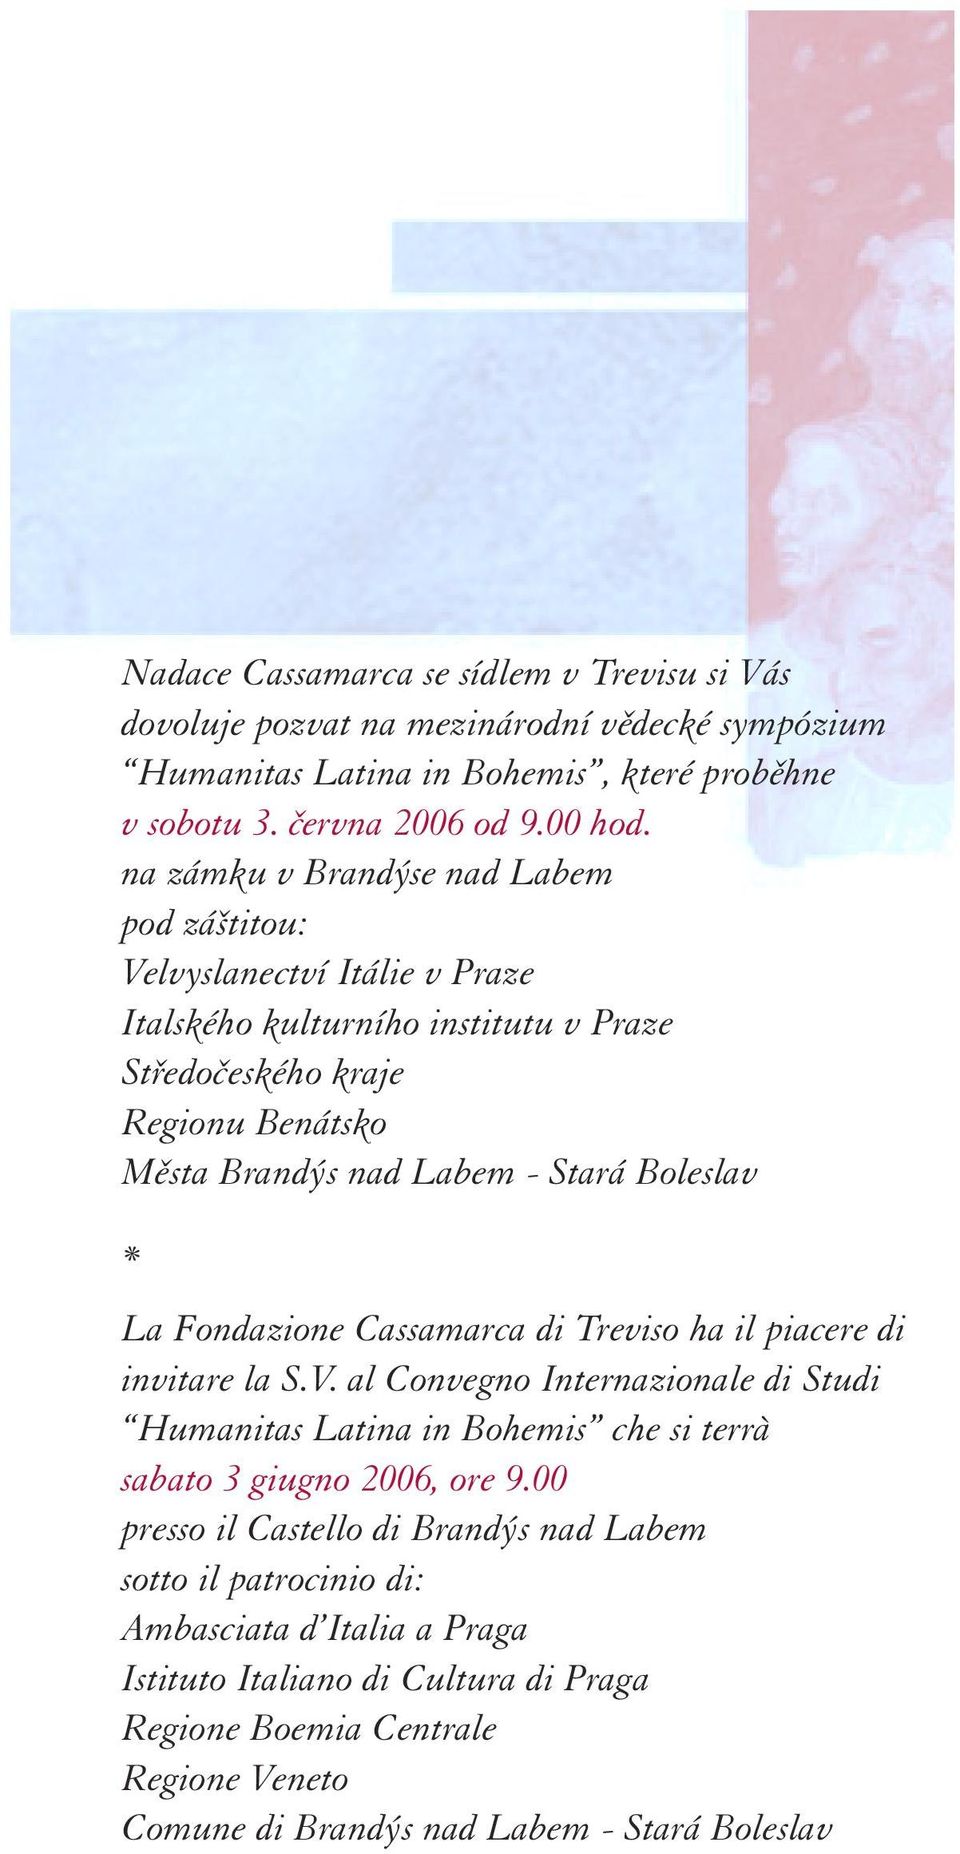 Boleslav * La Fondazione Cassamarca di Treviso ha il piacere di invitare la S.V. al Convegno Internazionale di Studi Humanitas Latina in Bohemis che si terrà sabato 3 giugno 2006, ore 9.